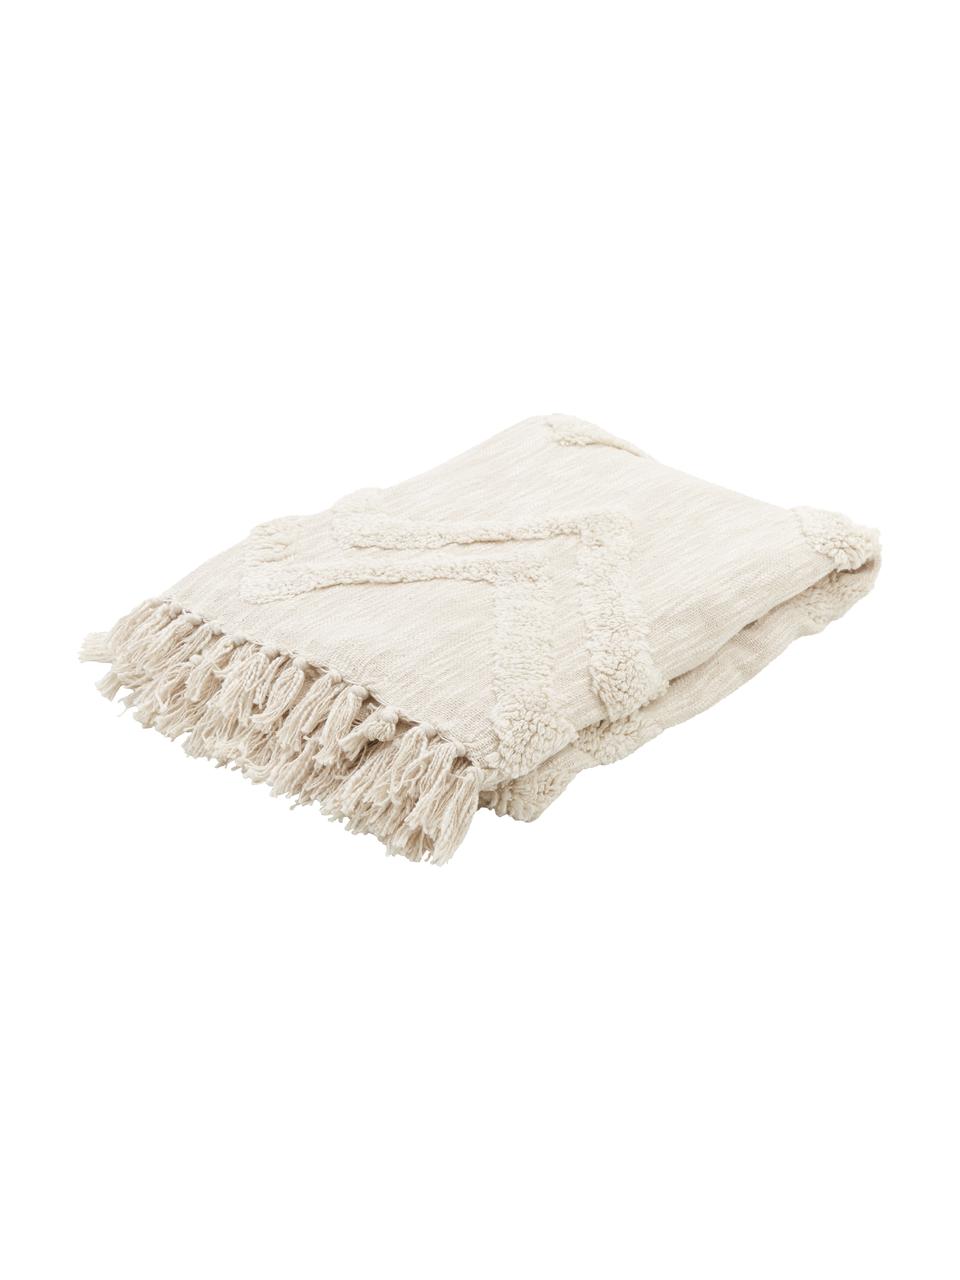 Koc z bawełny Akesha, 100% bawełna, Ecru, S 130 x D 170 cm